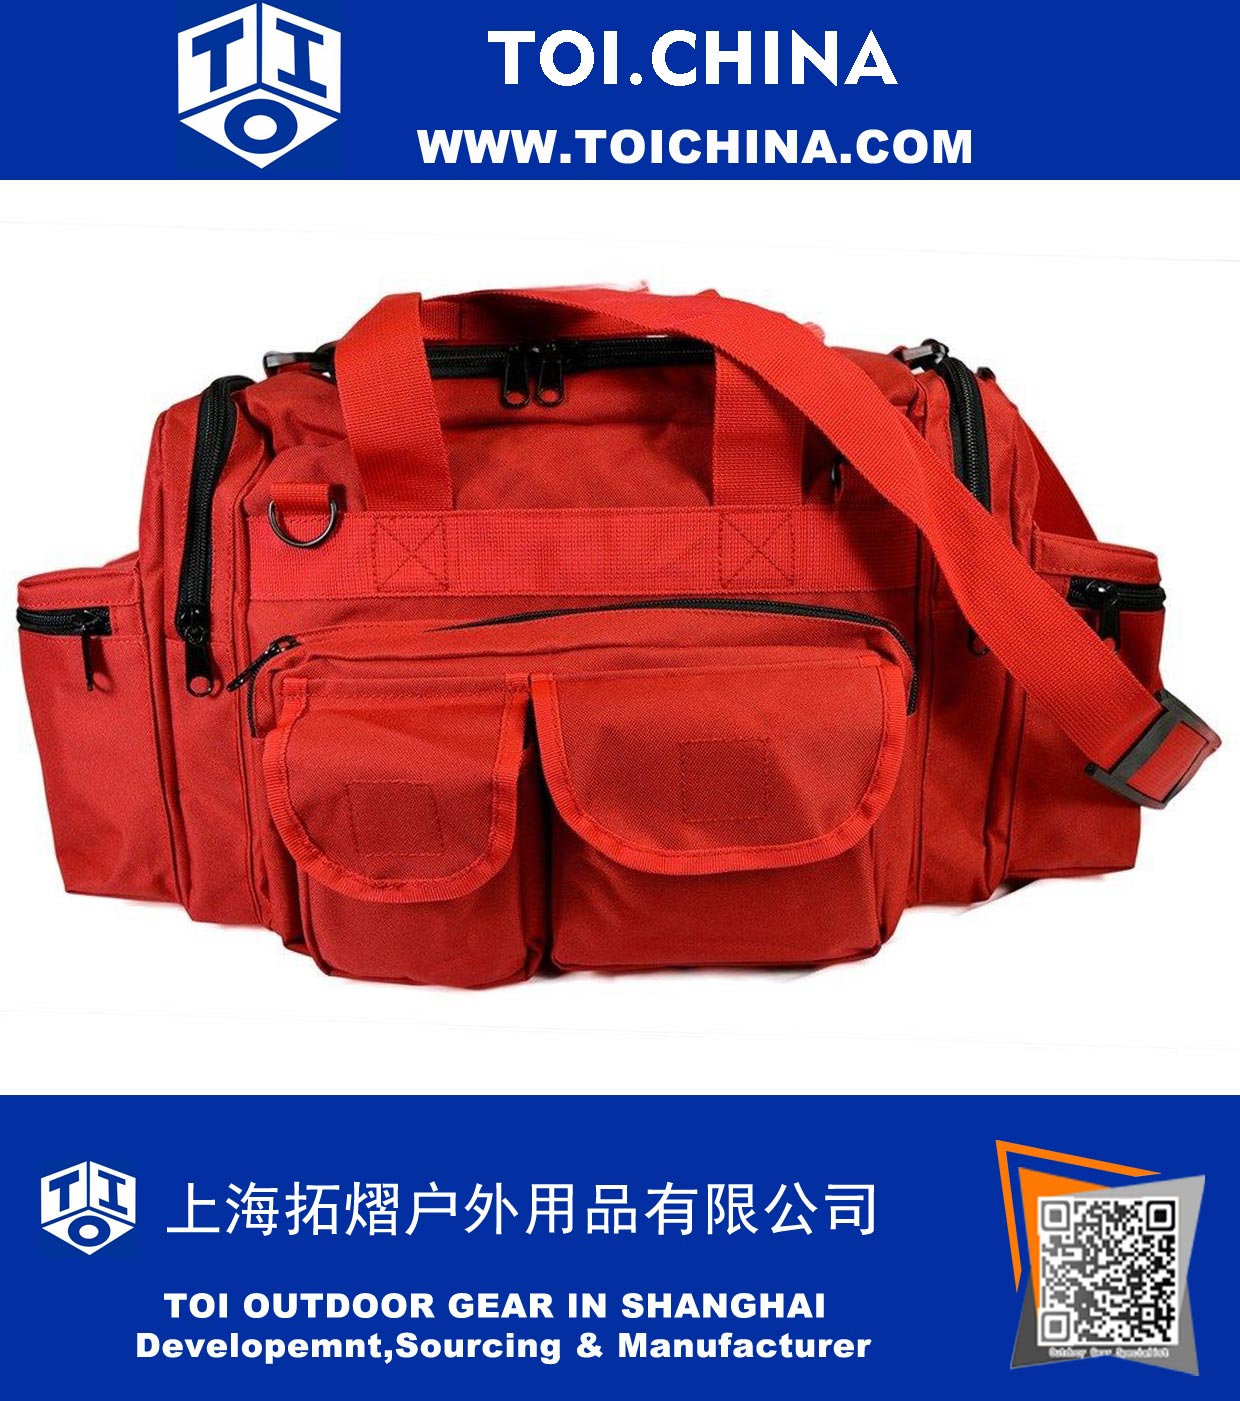 EMT Medical Gear Bag